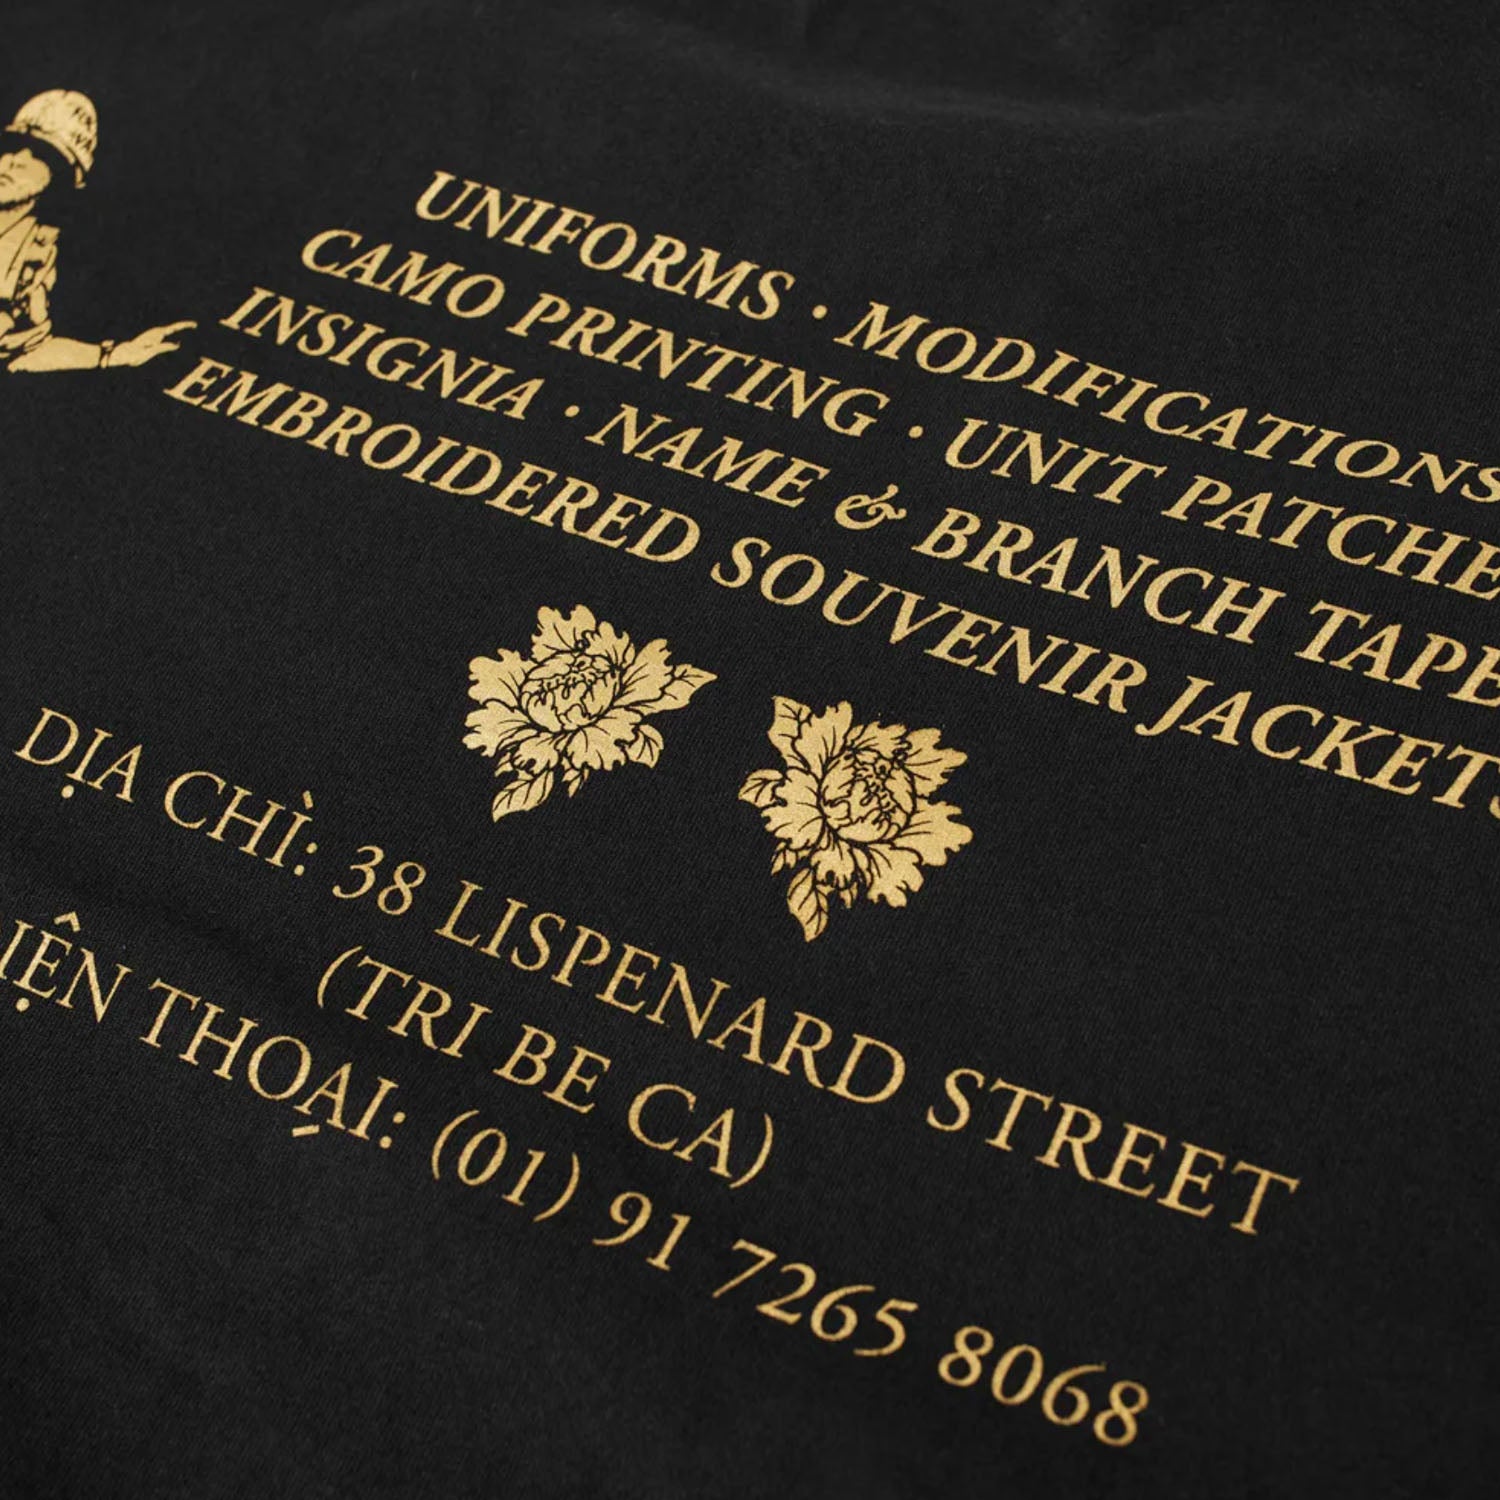 Maharishi Maha Gold Tailor T-Shirt Organic Jersey 190 Black